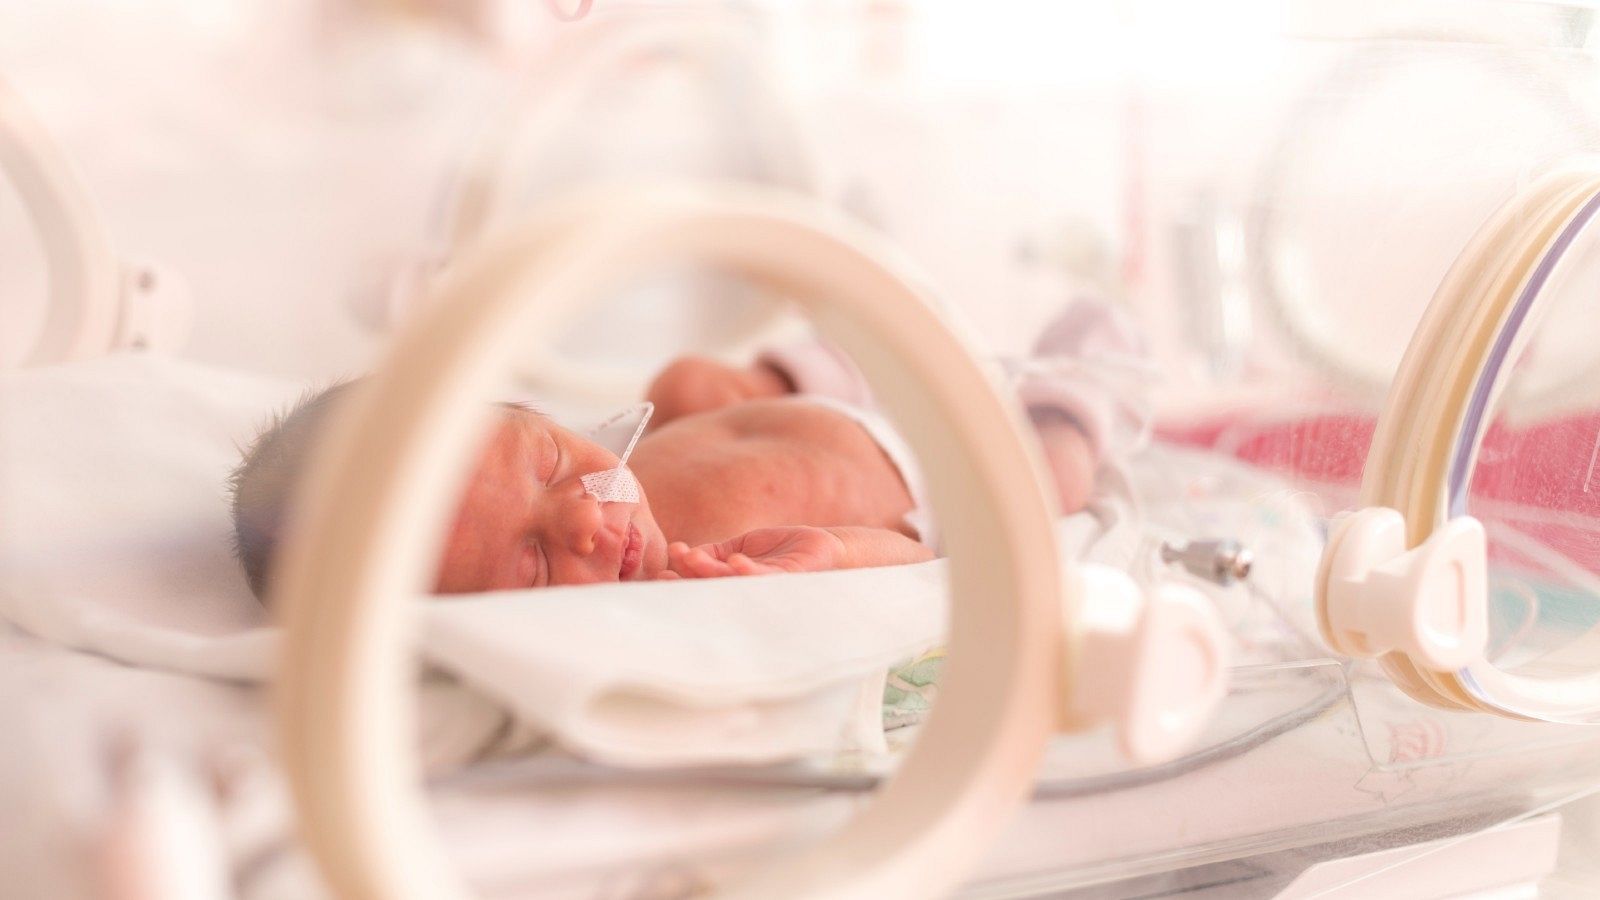 Un bebUn bebé prematuro permanece en la incubadora, en una imagen de archivo.